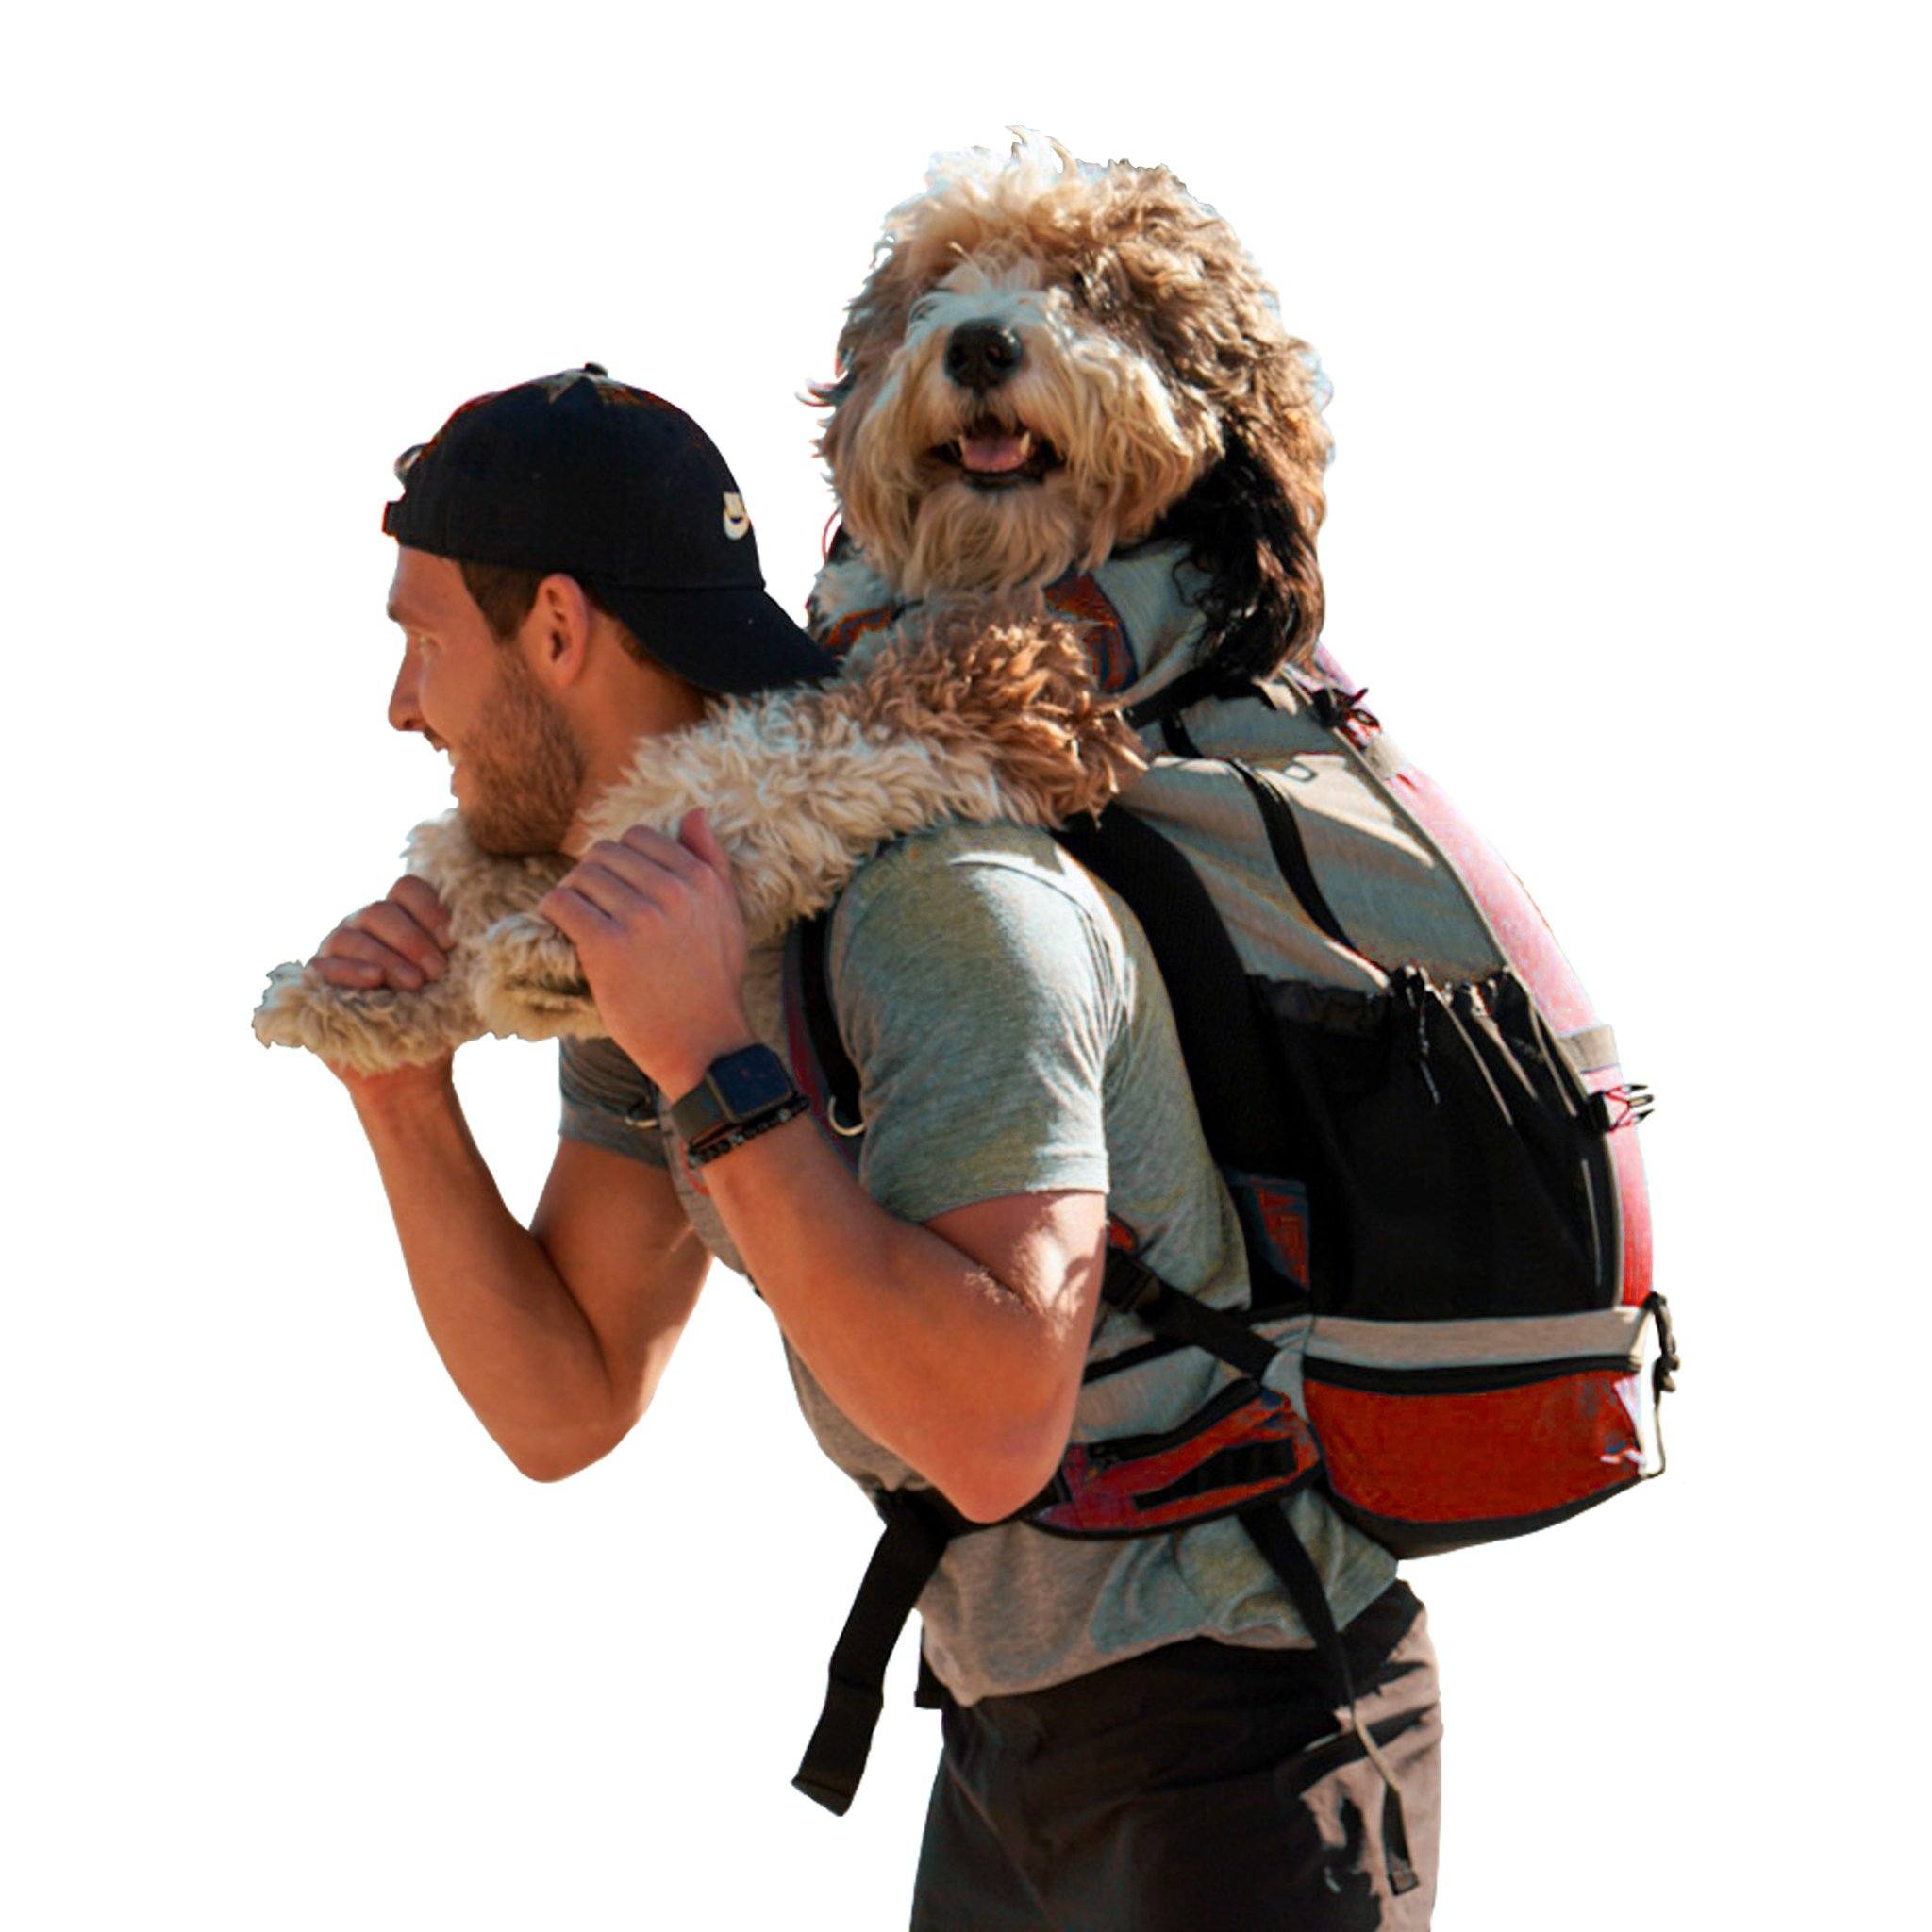 little dog backpack